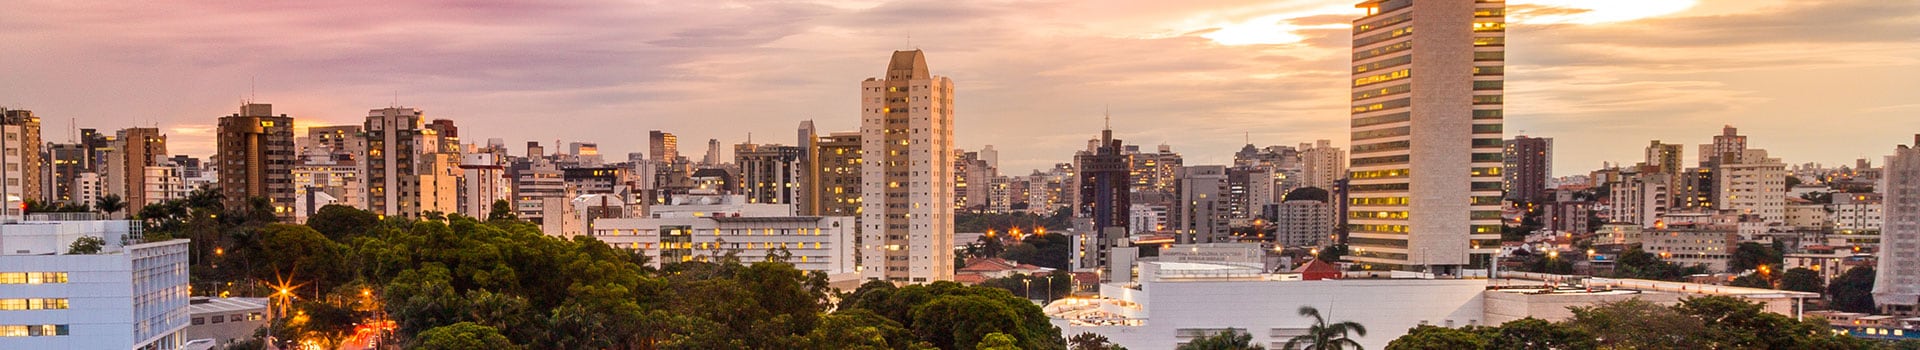 Joinville - Belo horizonte